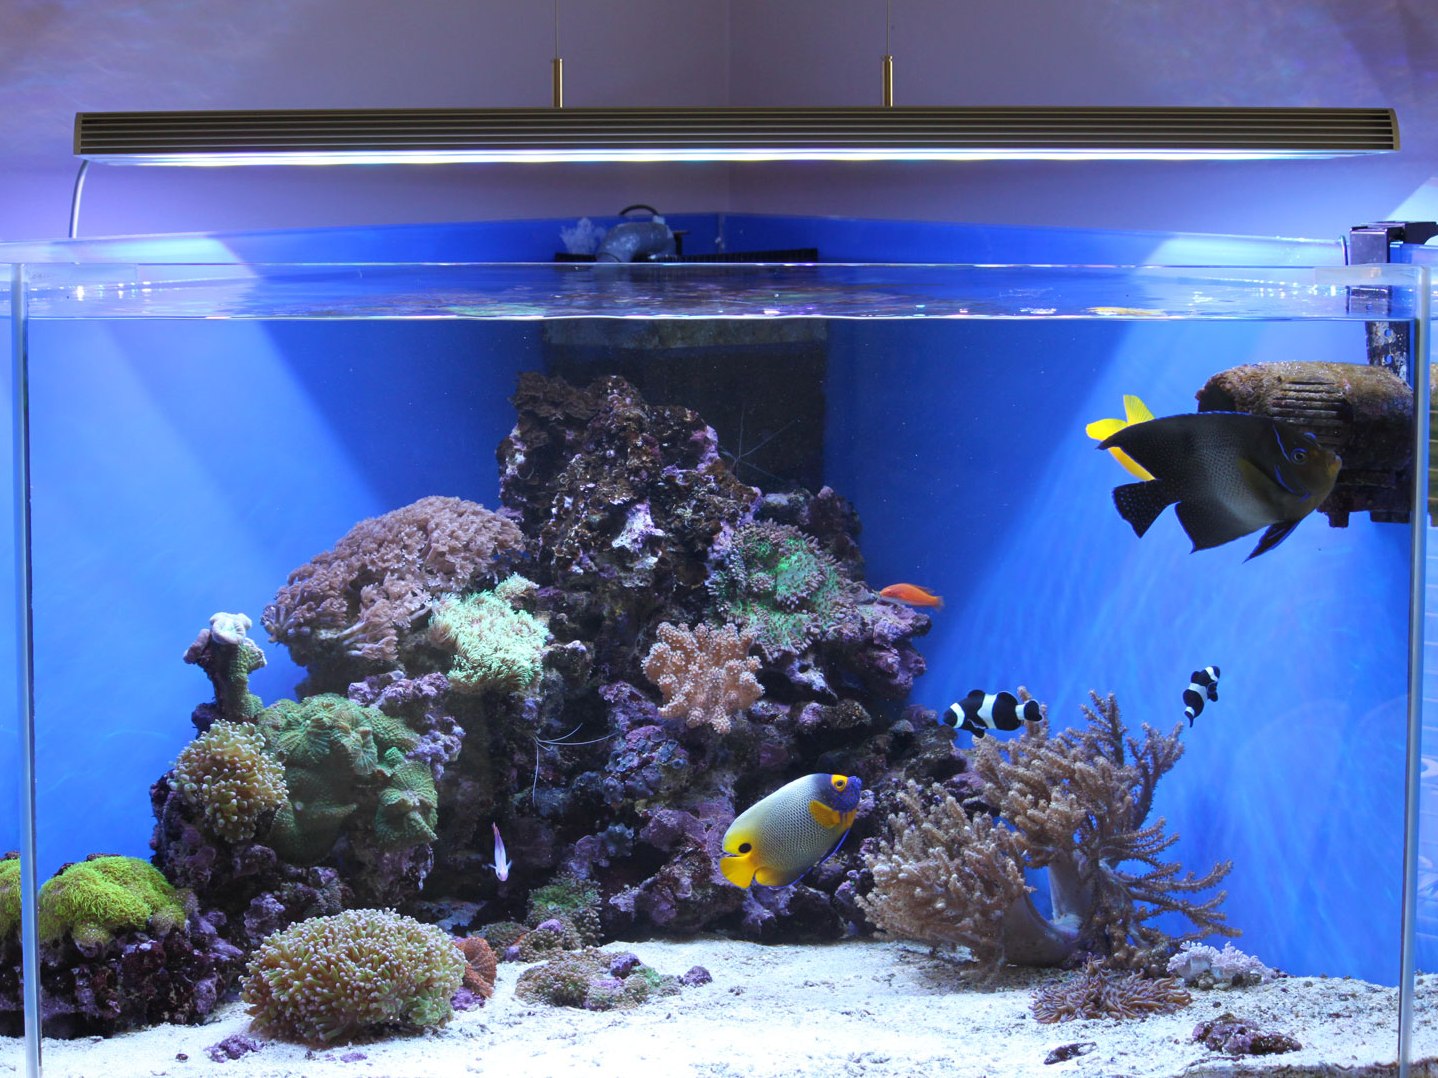 Особенности освещения аквариума и травника светодиодными прожекторами и светильниками: как выбрать, закрепить, сделать самому